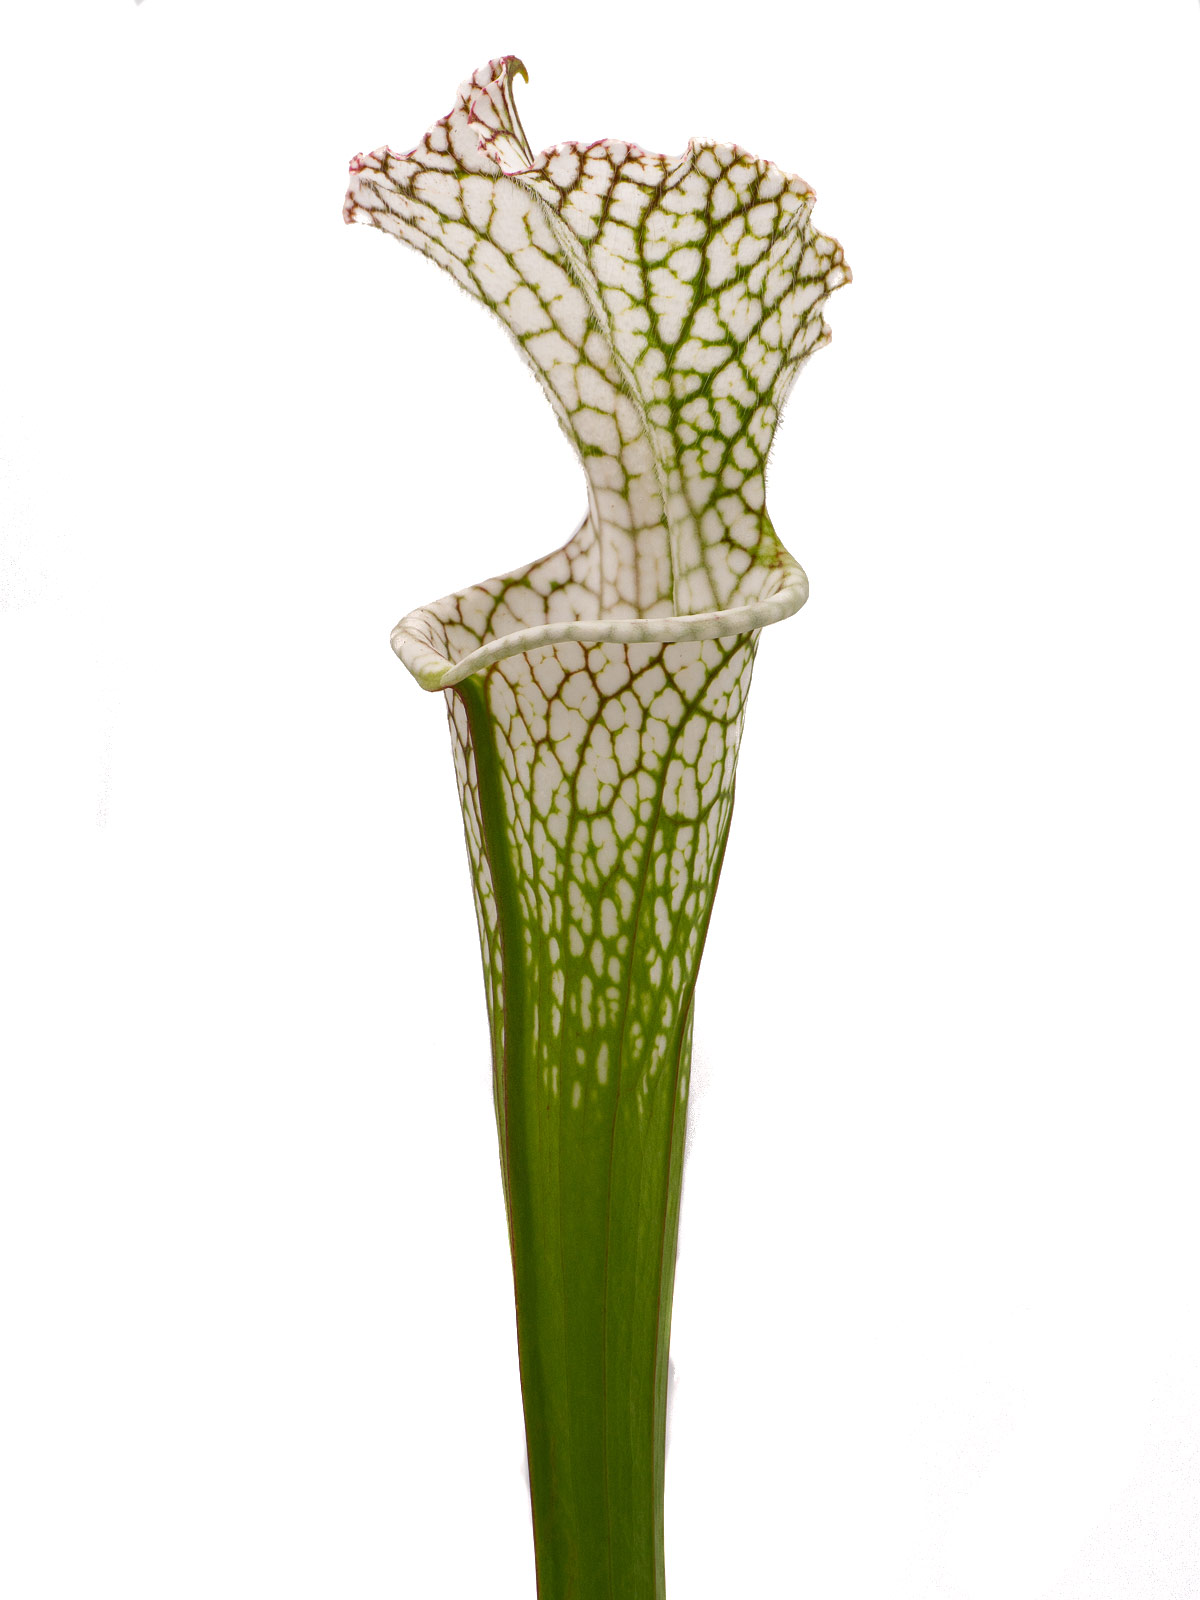 Sarracenia leucophylla - BG Mainz, 19-74690